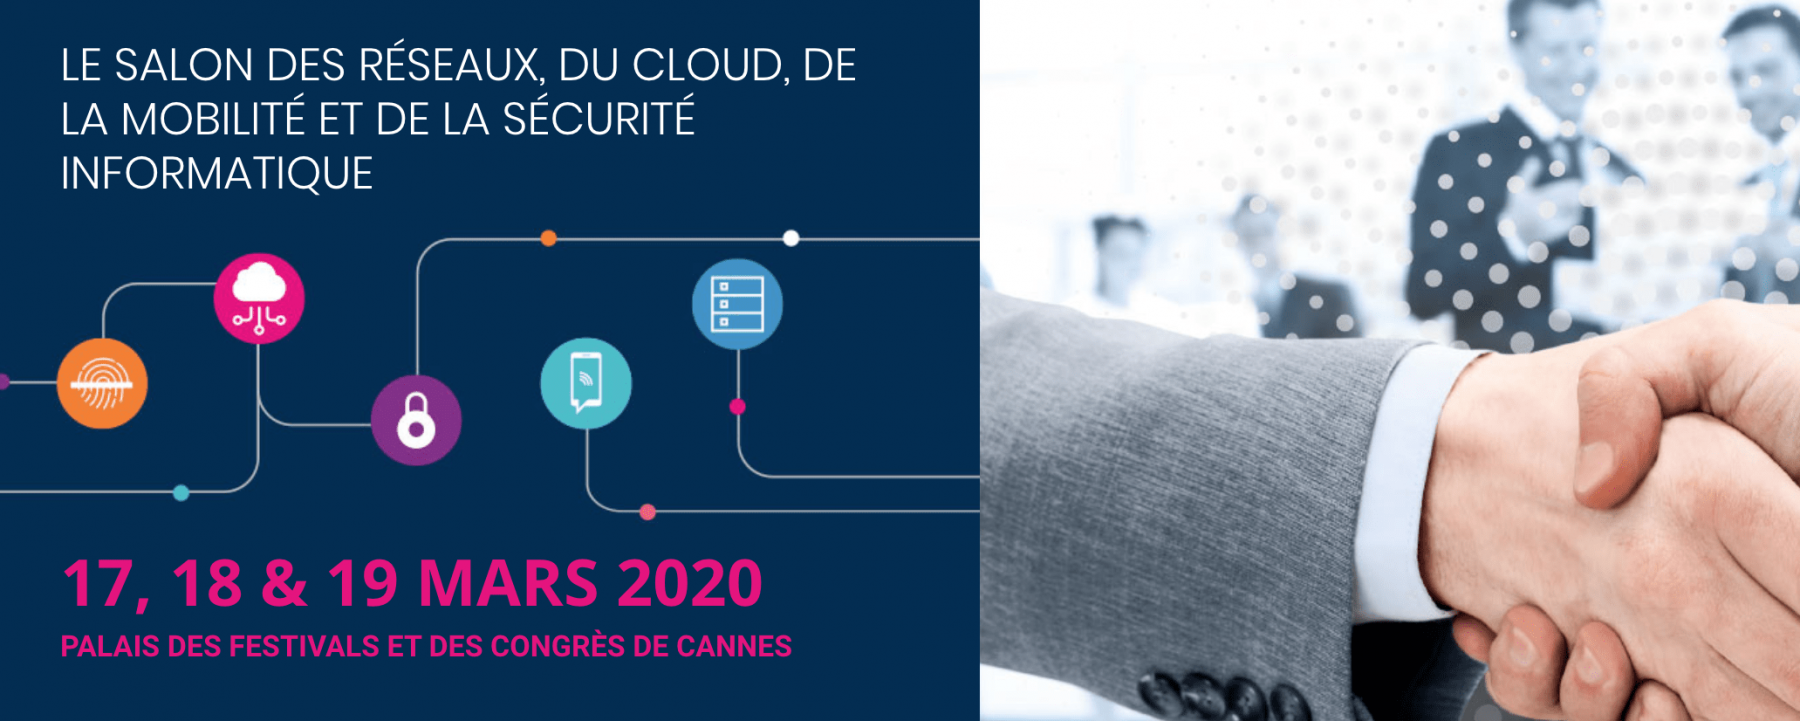 Evenement IT & IT Security Meetings 2020, organisé par Weyou Group, le 2 septembre 2020 au Palais des Festivals et des Congrès de Cannes 